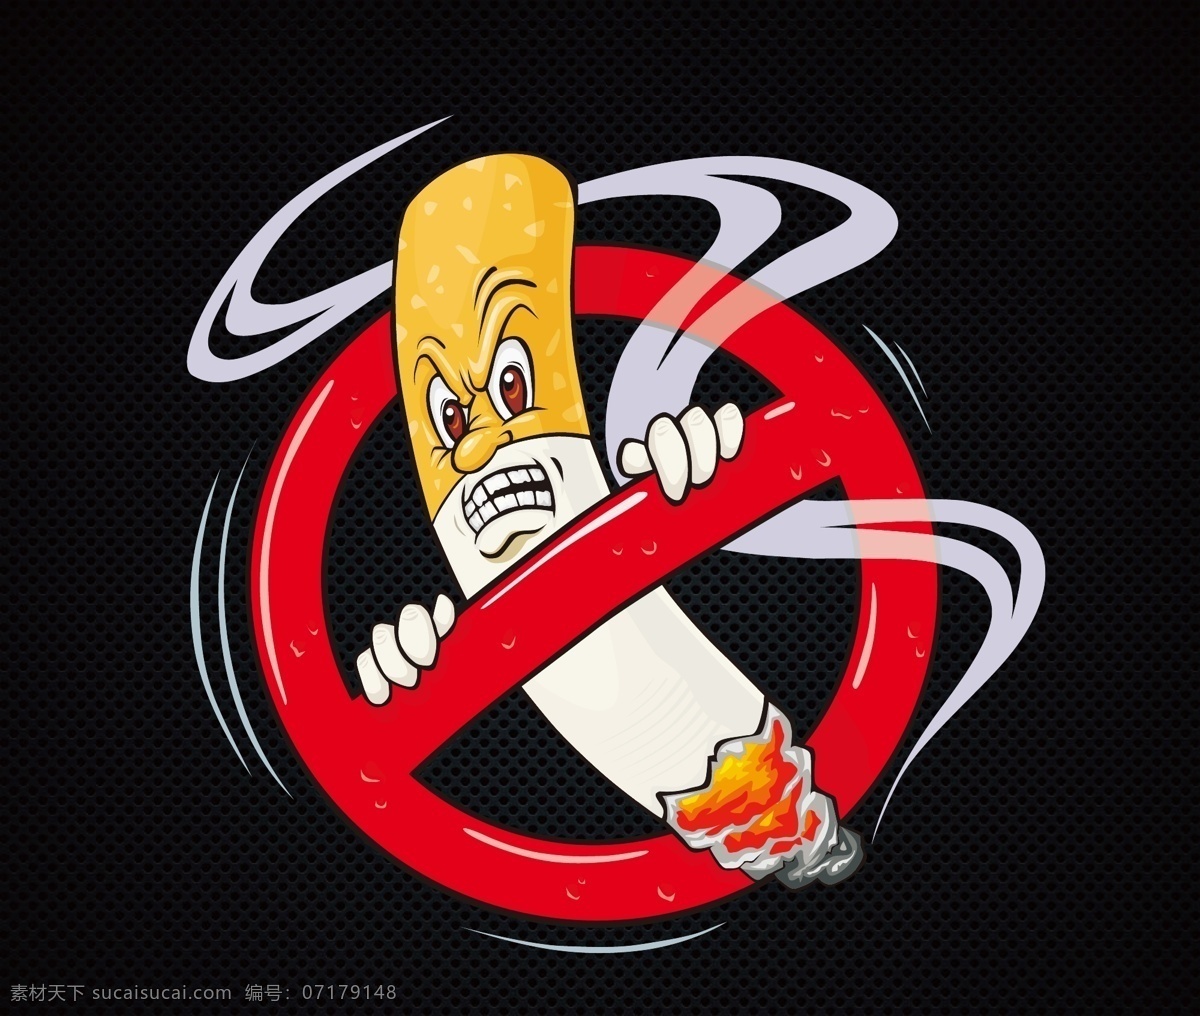 禁止吸烟 海报 烟 禁止 卡通烟蒂 二手烟 黑色